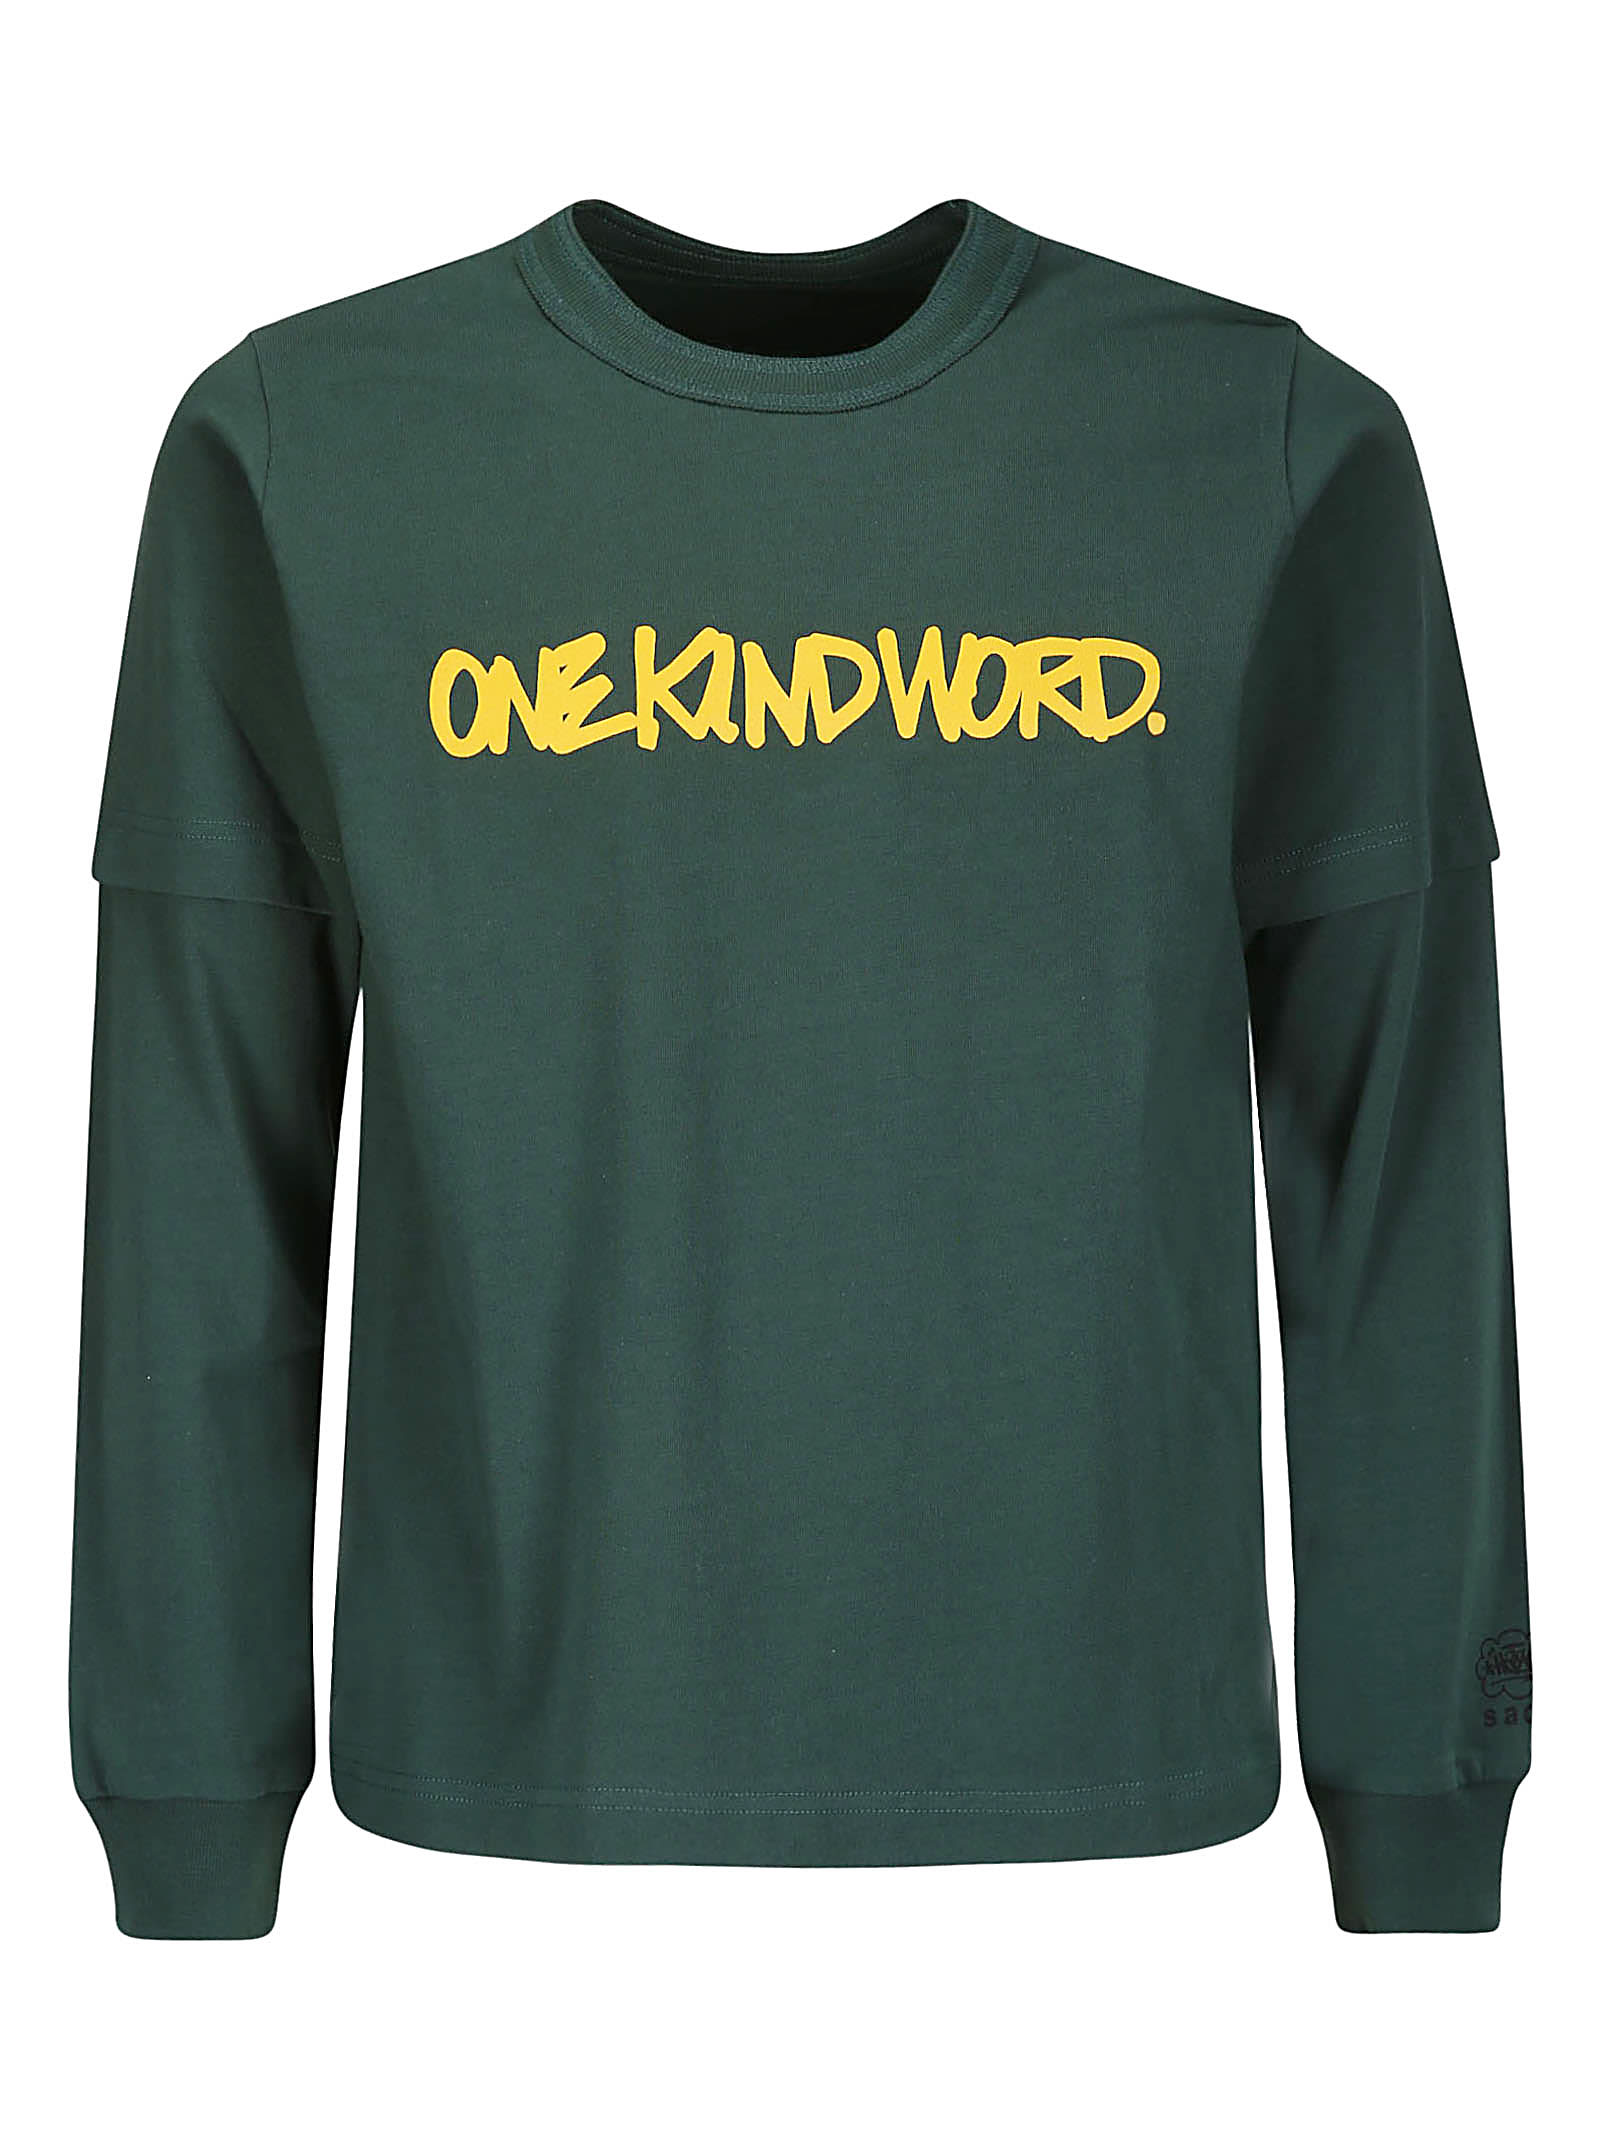 Sacai Eric Haze / Onekindword. L/s T-shirt